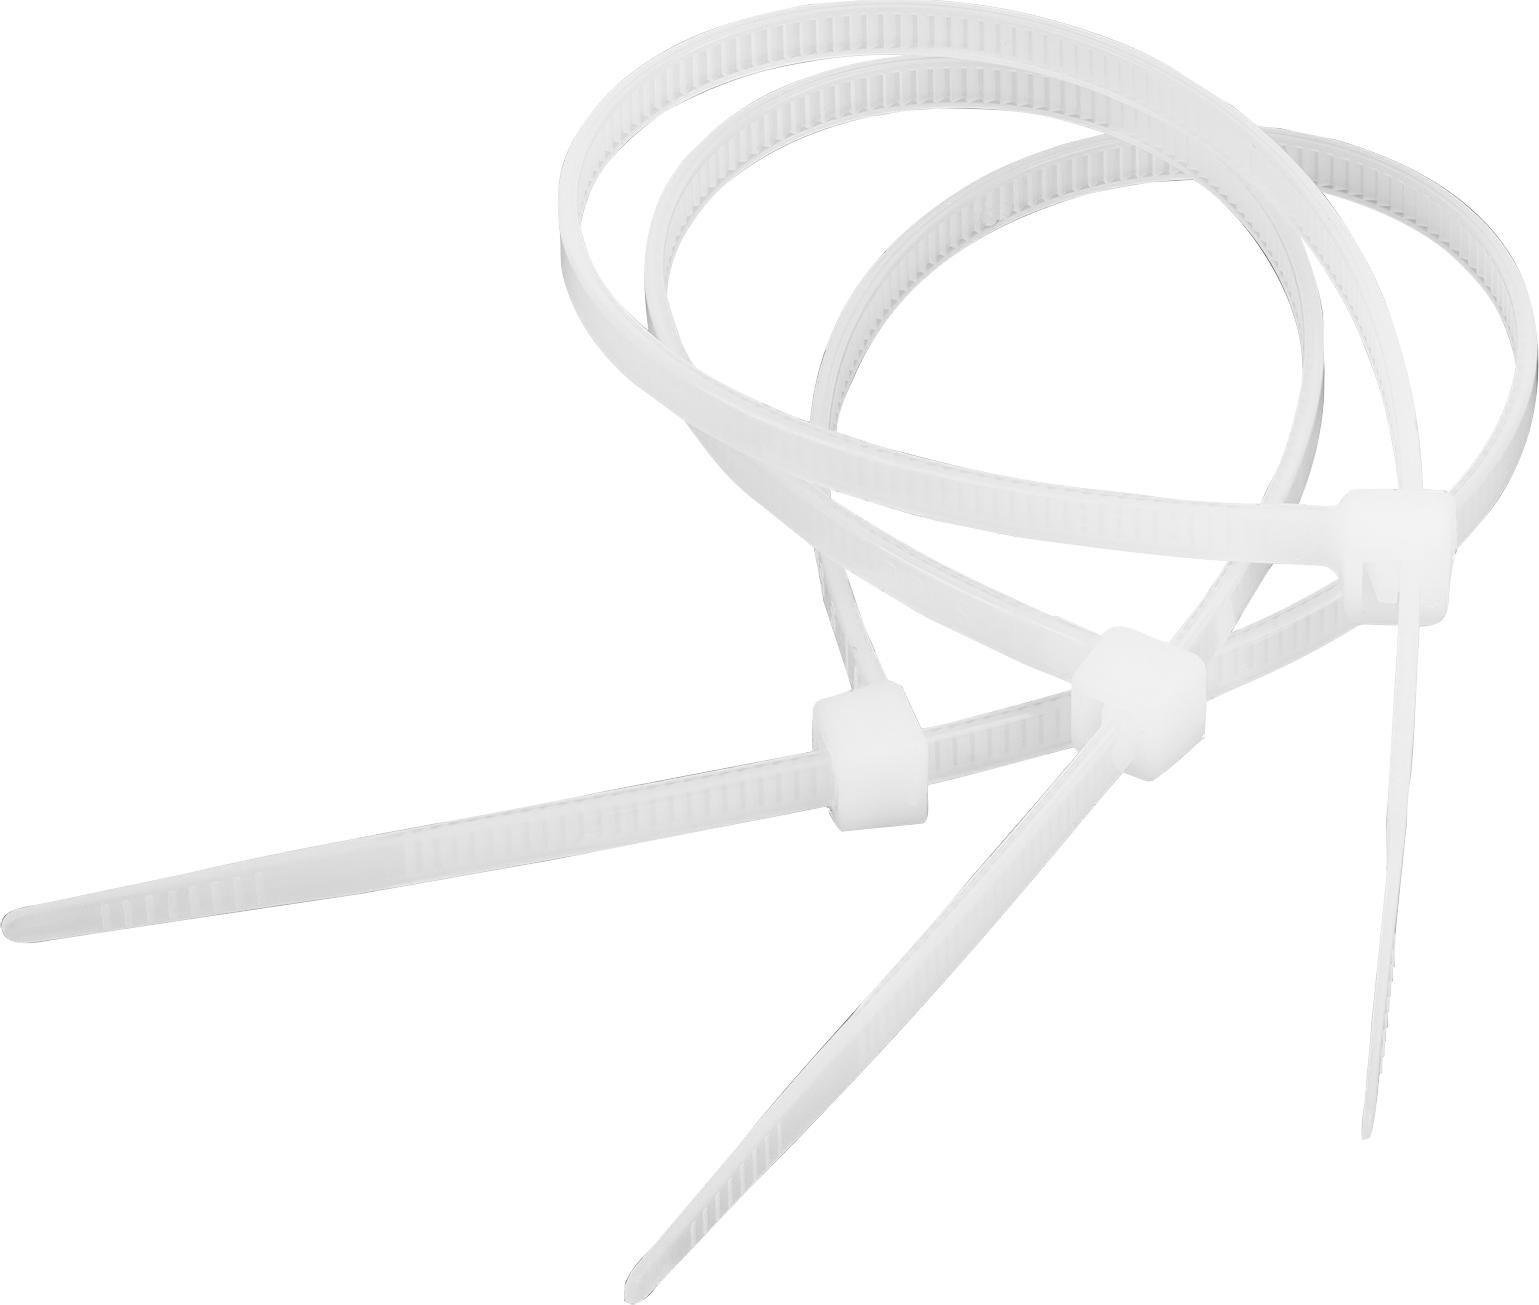 Cabletech Legătură pentru cablu 2,5 mm/10 cm alb Cabletech 100buc.